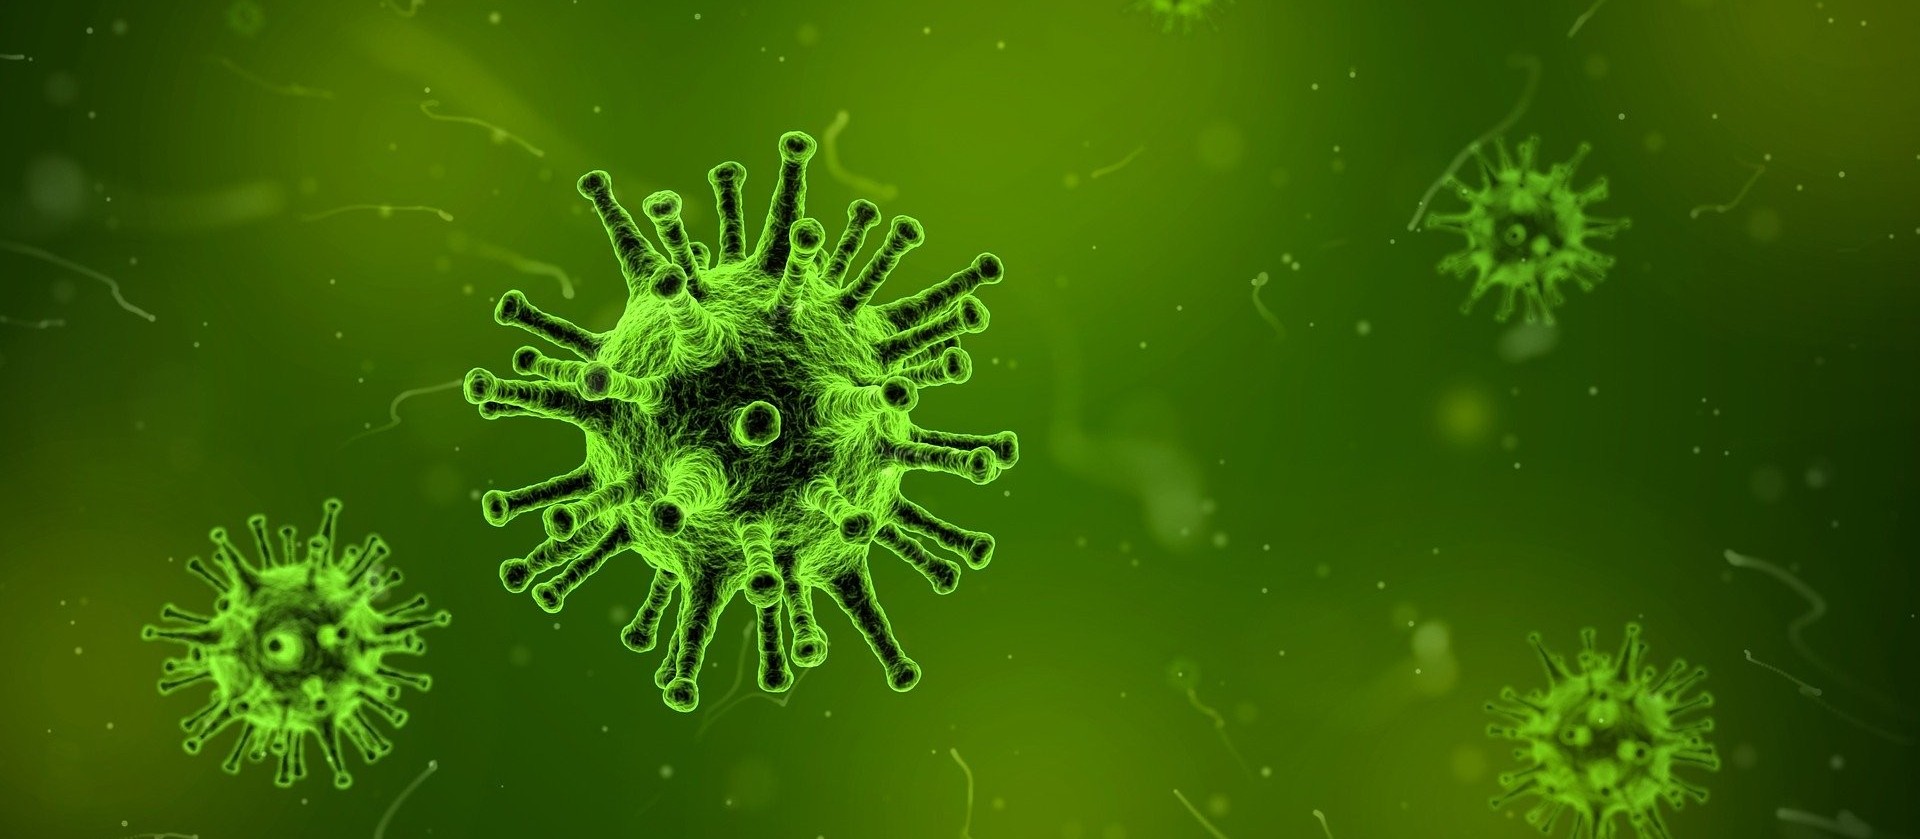 Universitários da área de saúde vão antecipar formatura para combater coronavírus